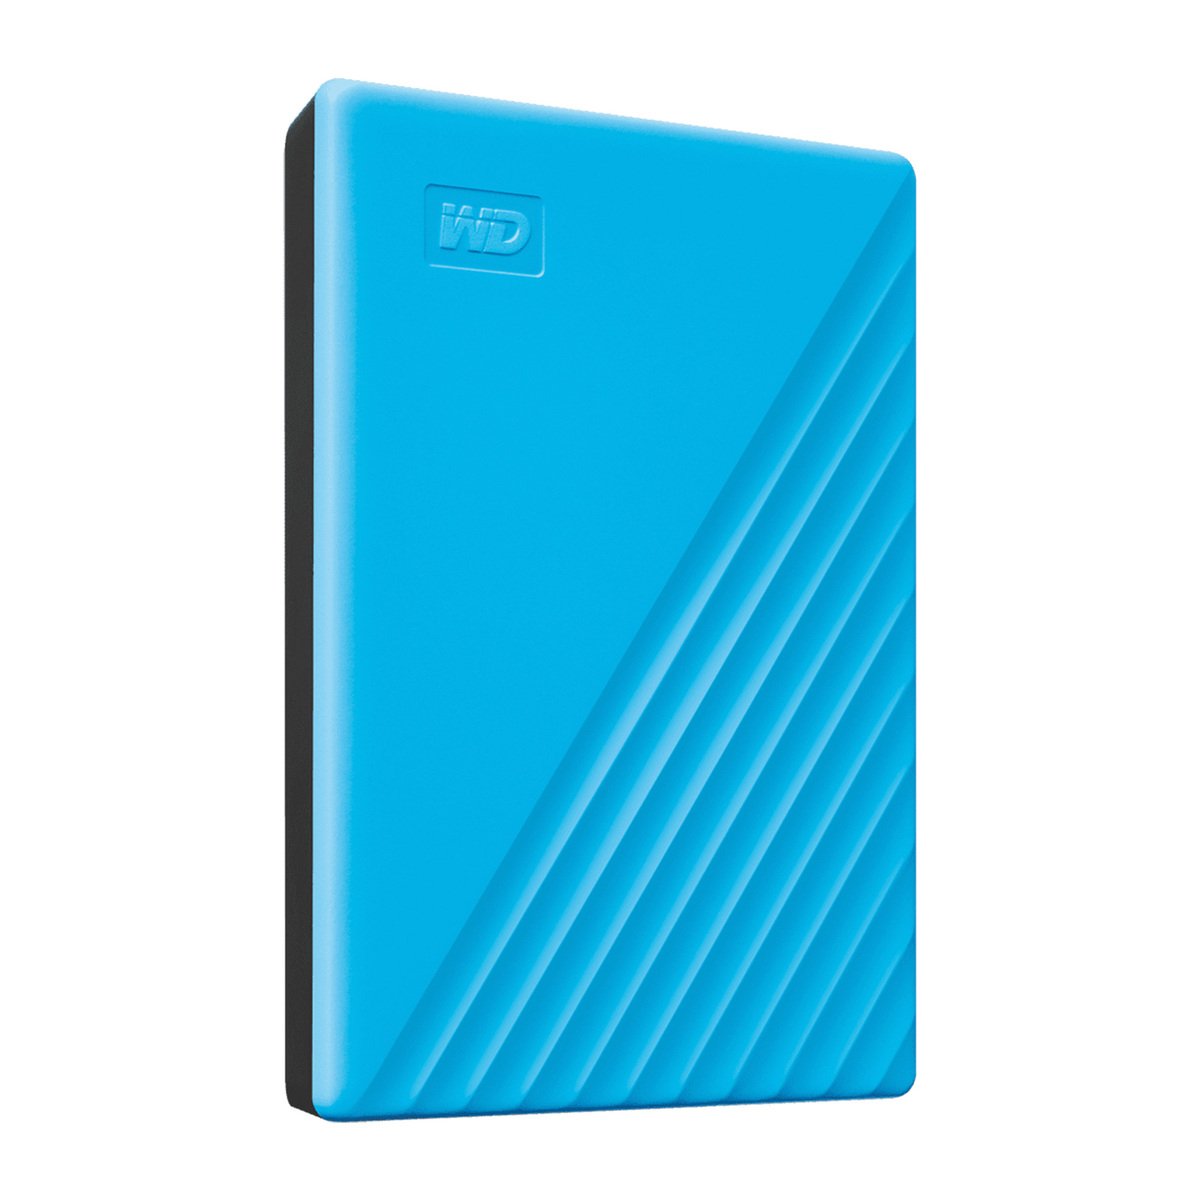 Western Digital My Passport 4TB Portable Hard Drive WDBPKJ0040B 4TB Blue